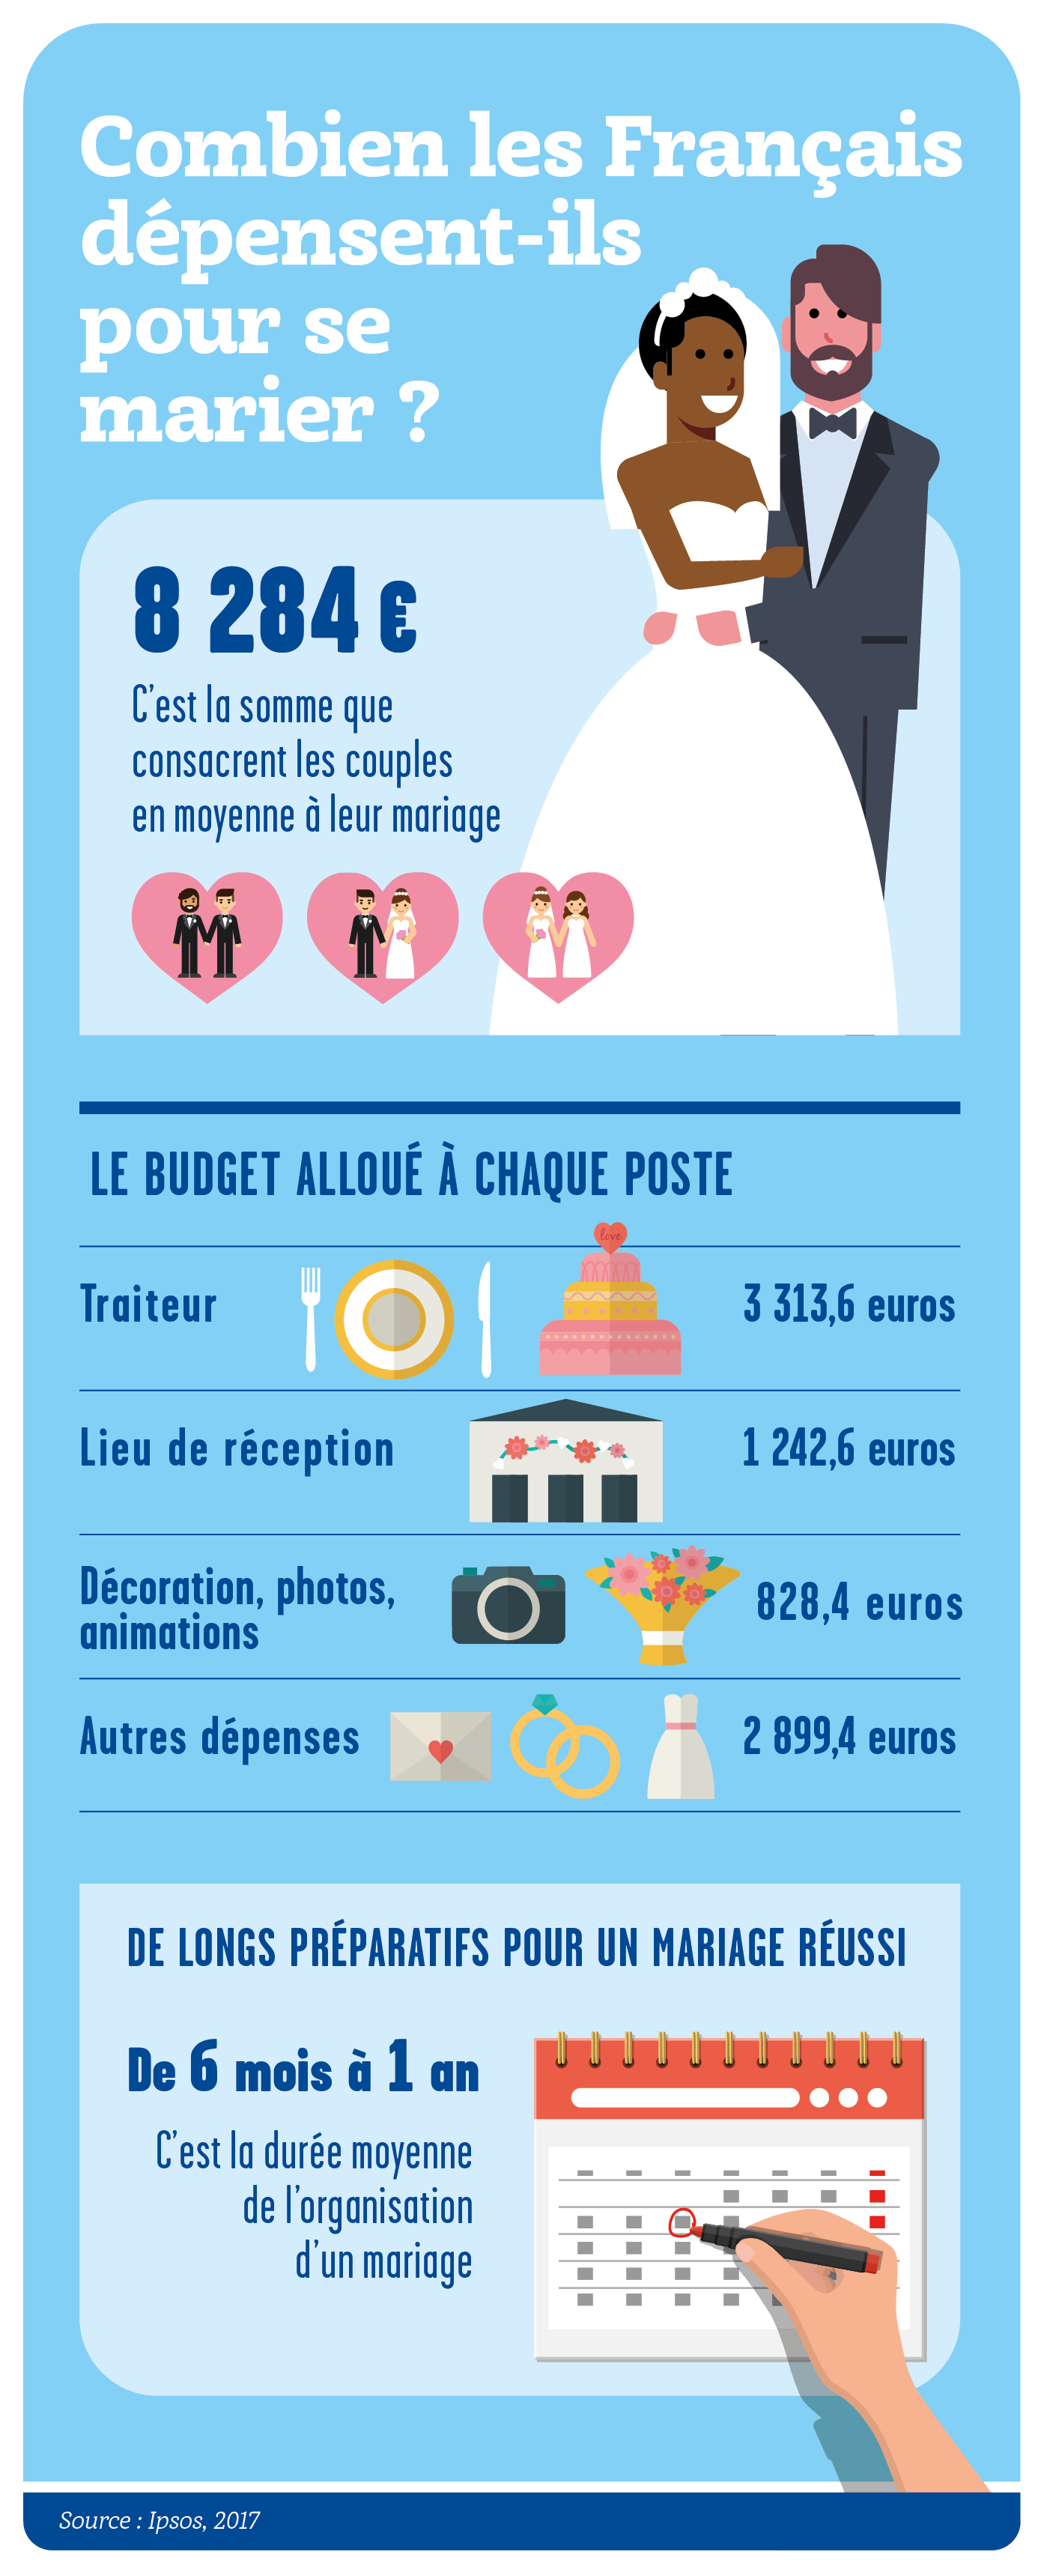 Combien les Français dépensent-ils pour se marier ?